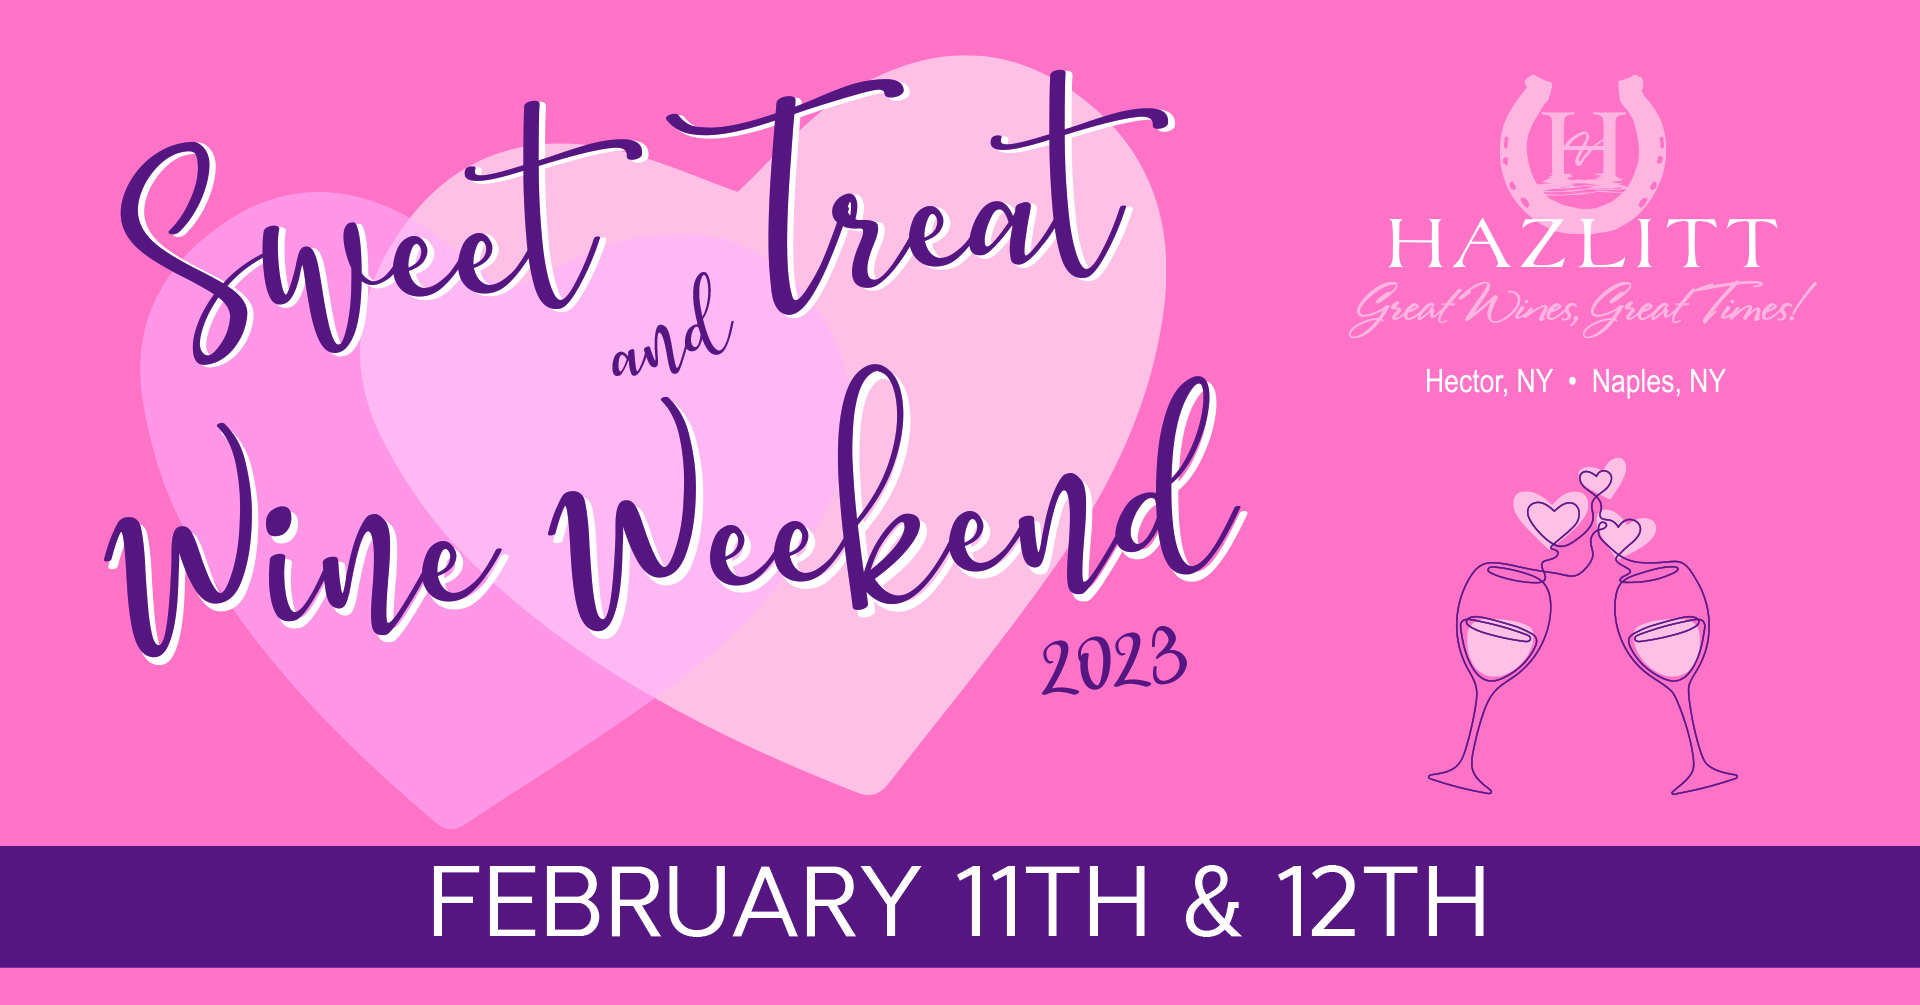 Sweet Treat & Wine Weekend Feb.11-12, 2023